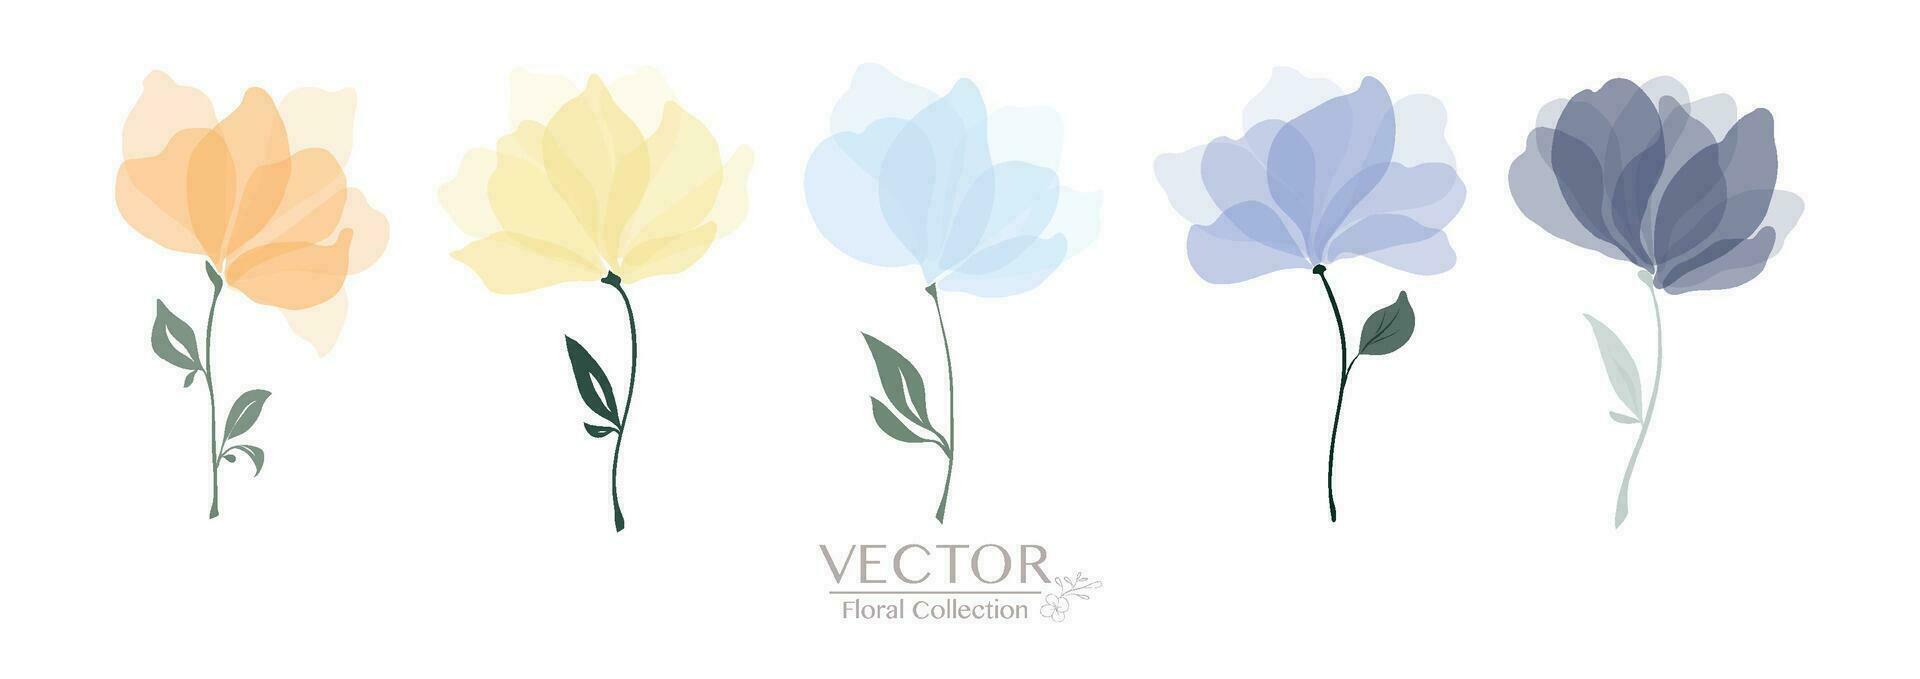 conjunto do colorida floral coleção vetor